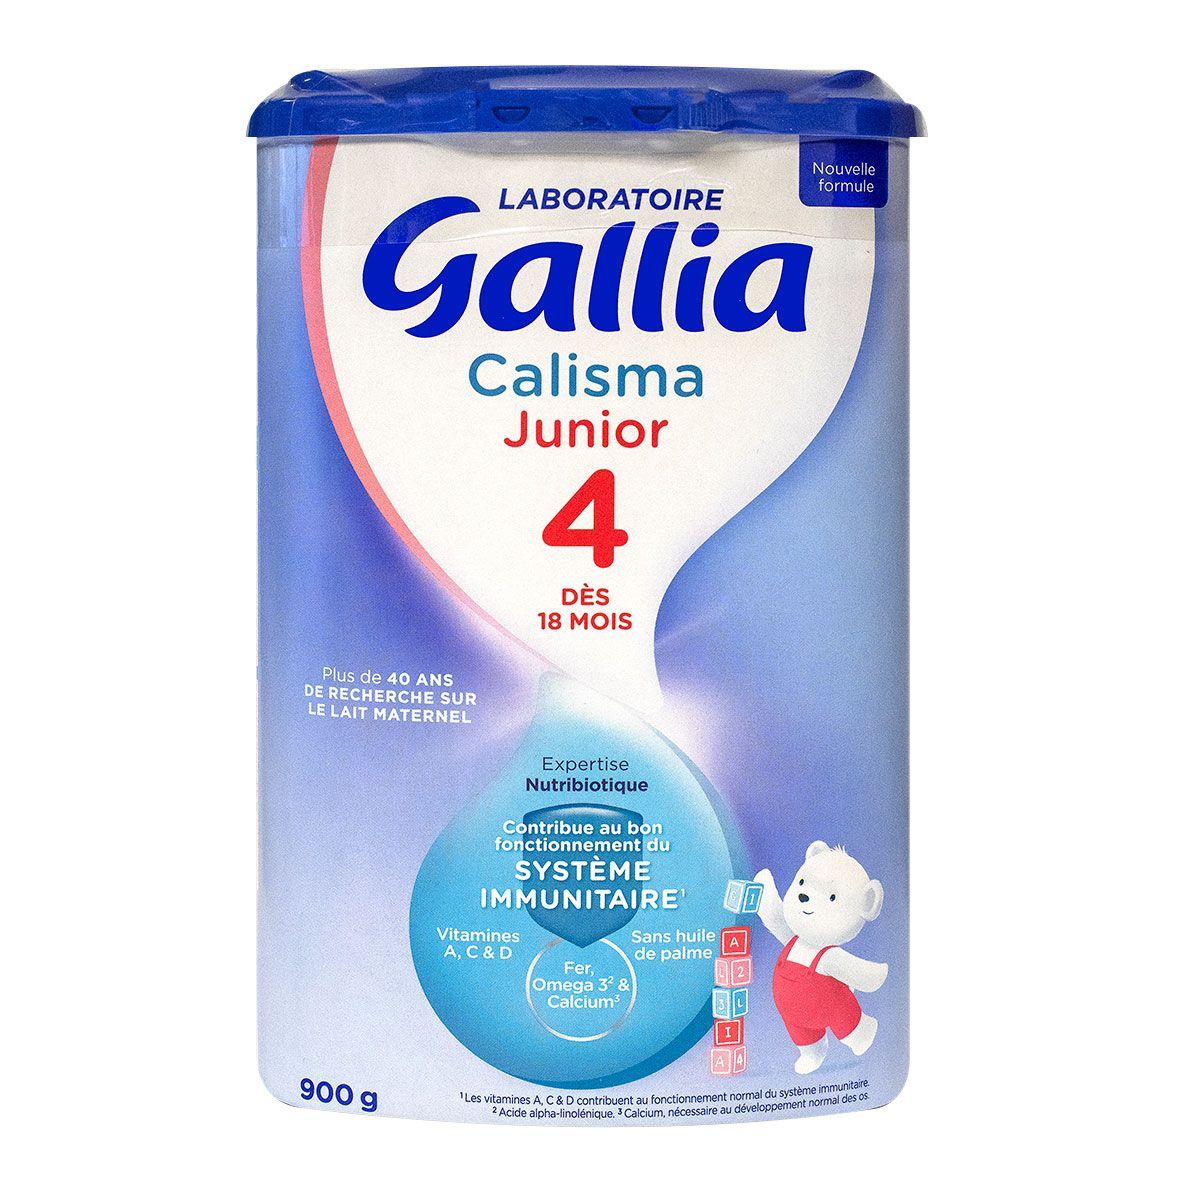 Gallia Calisma 4 Junior est un aliment lacté en poudre